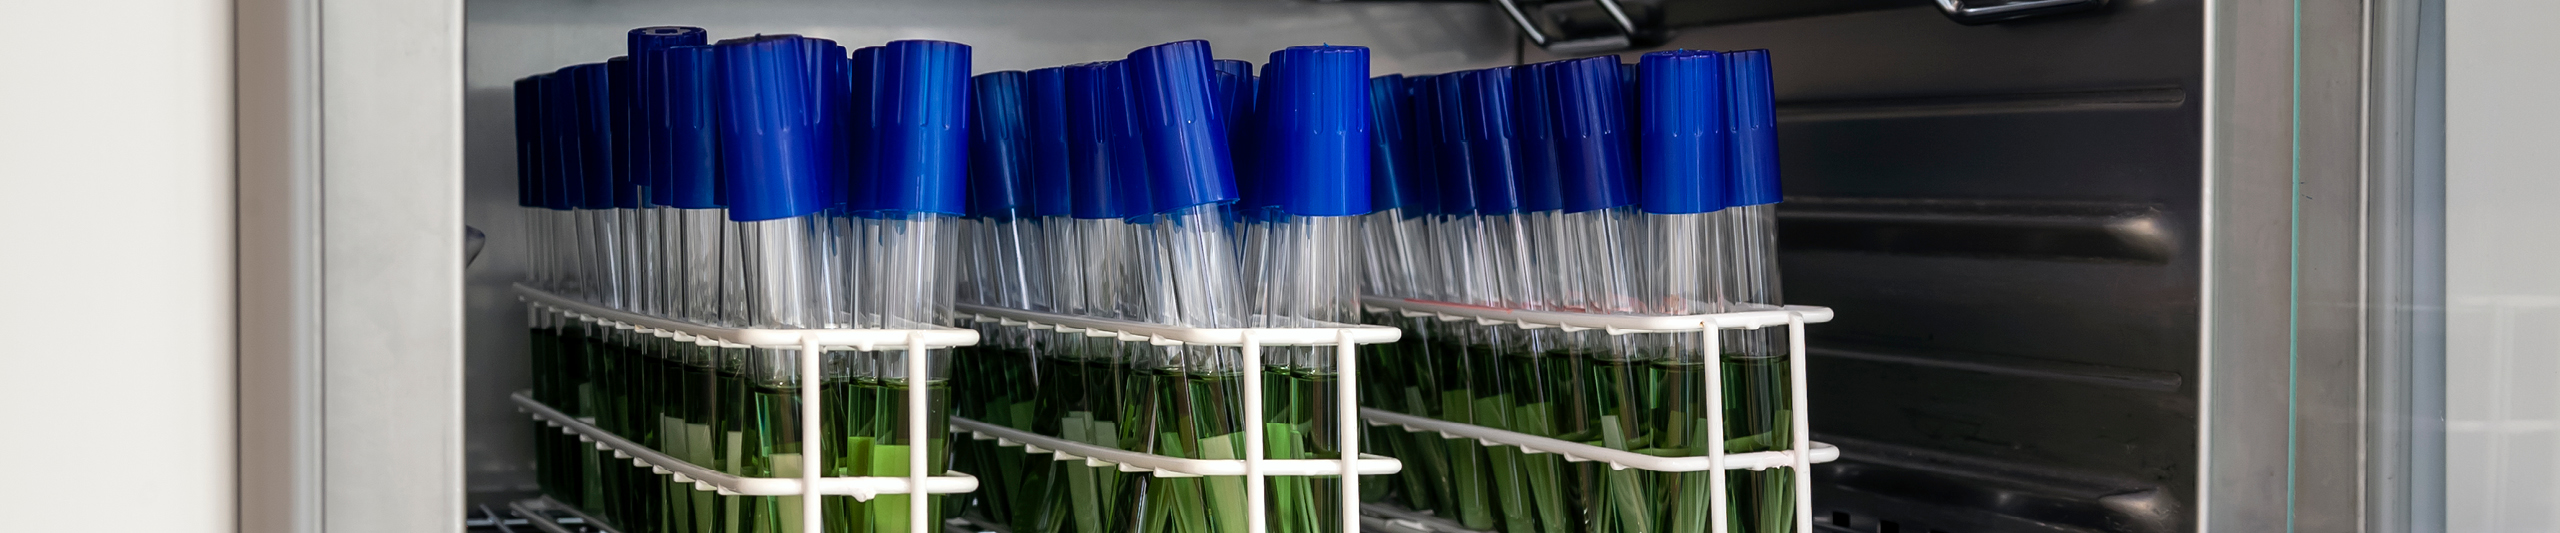 Reagensglas med grøn væske og blå hætter til bakteriesporing via en biologisk indikator